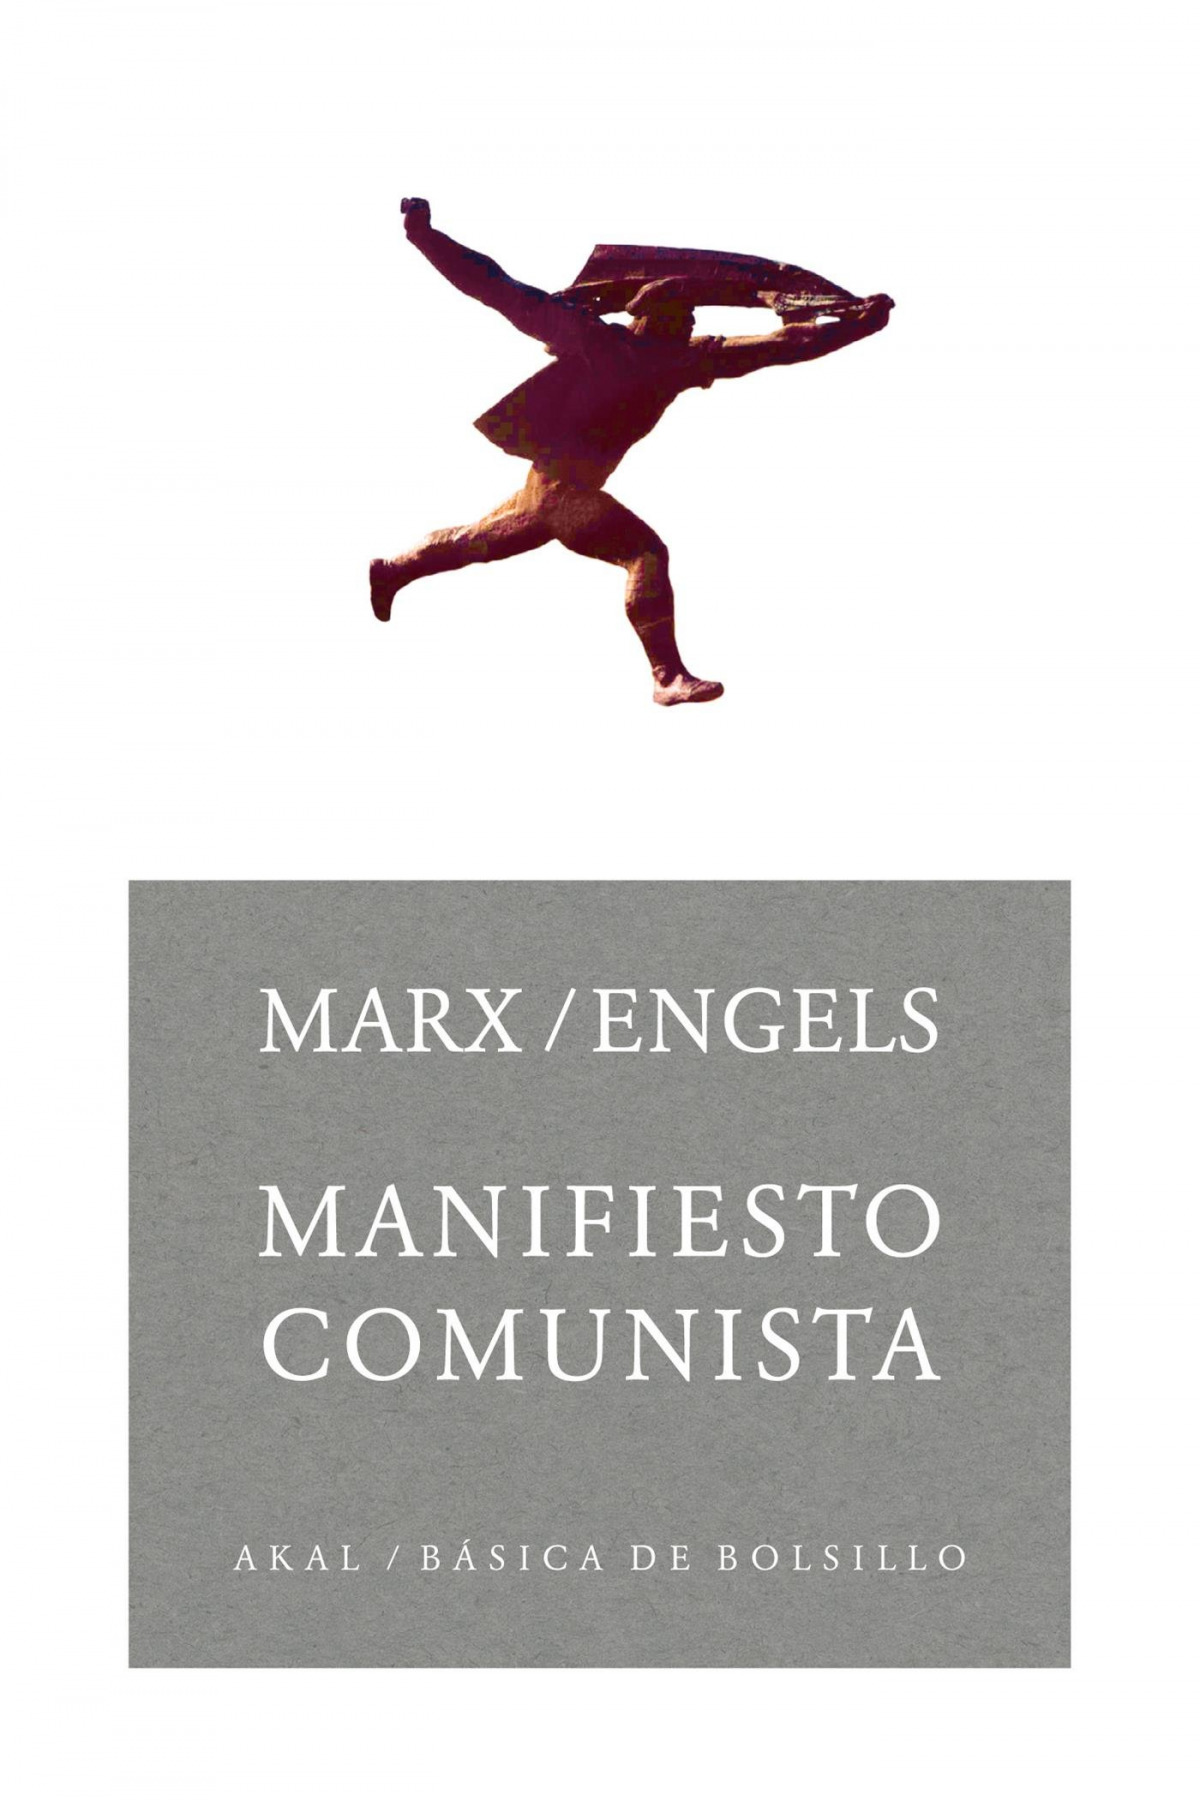 Manifiesto comunista (Básica de Bolsillo, Band 115)